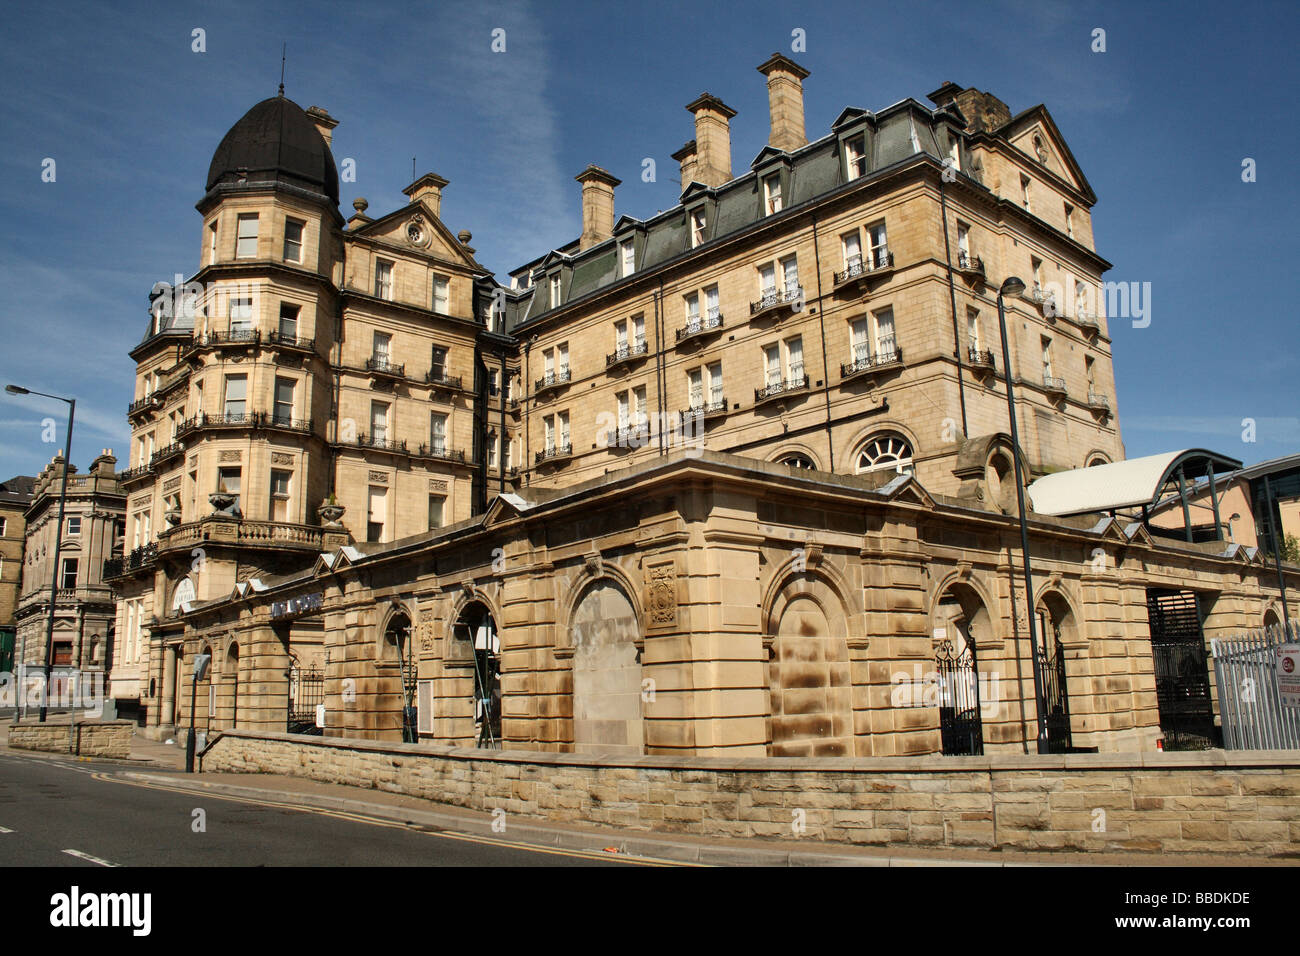 Midland Hotel Bradford a dispose d'un intérêt architectural. Comme Victoria Hôtel tout près aux liaisons ferroviaires un facteur Banque D'Images